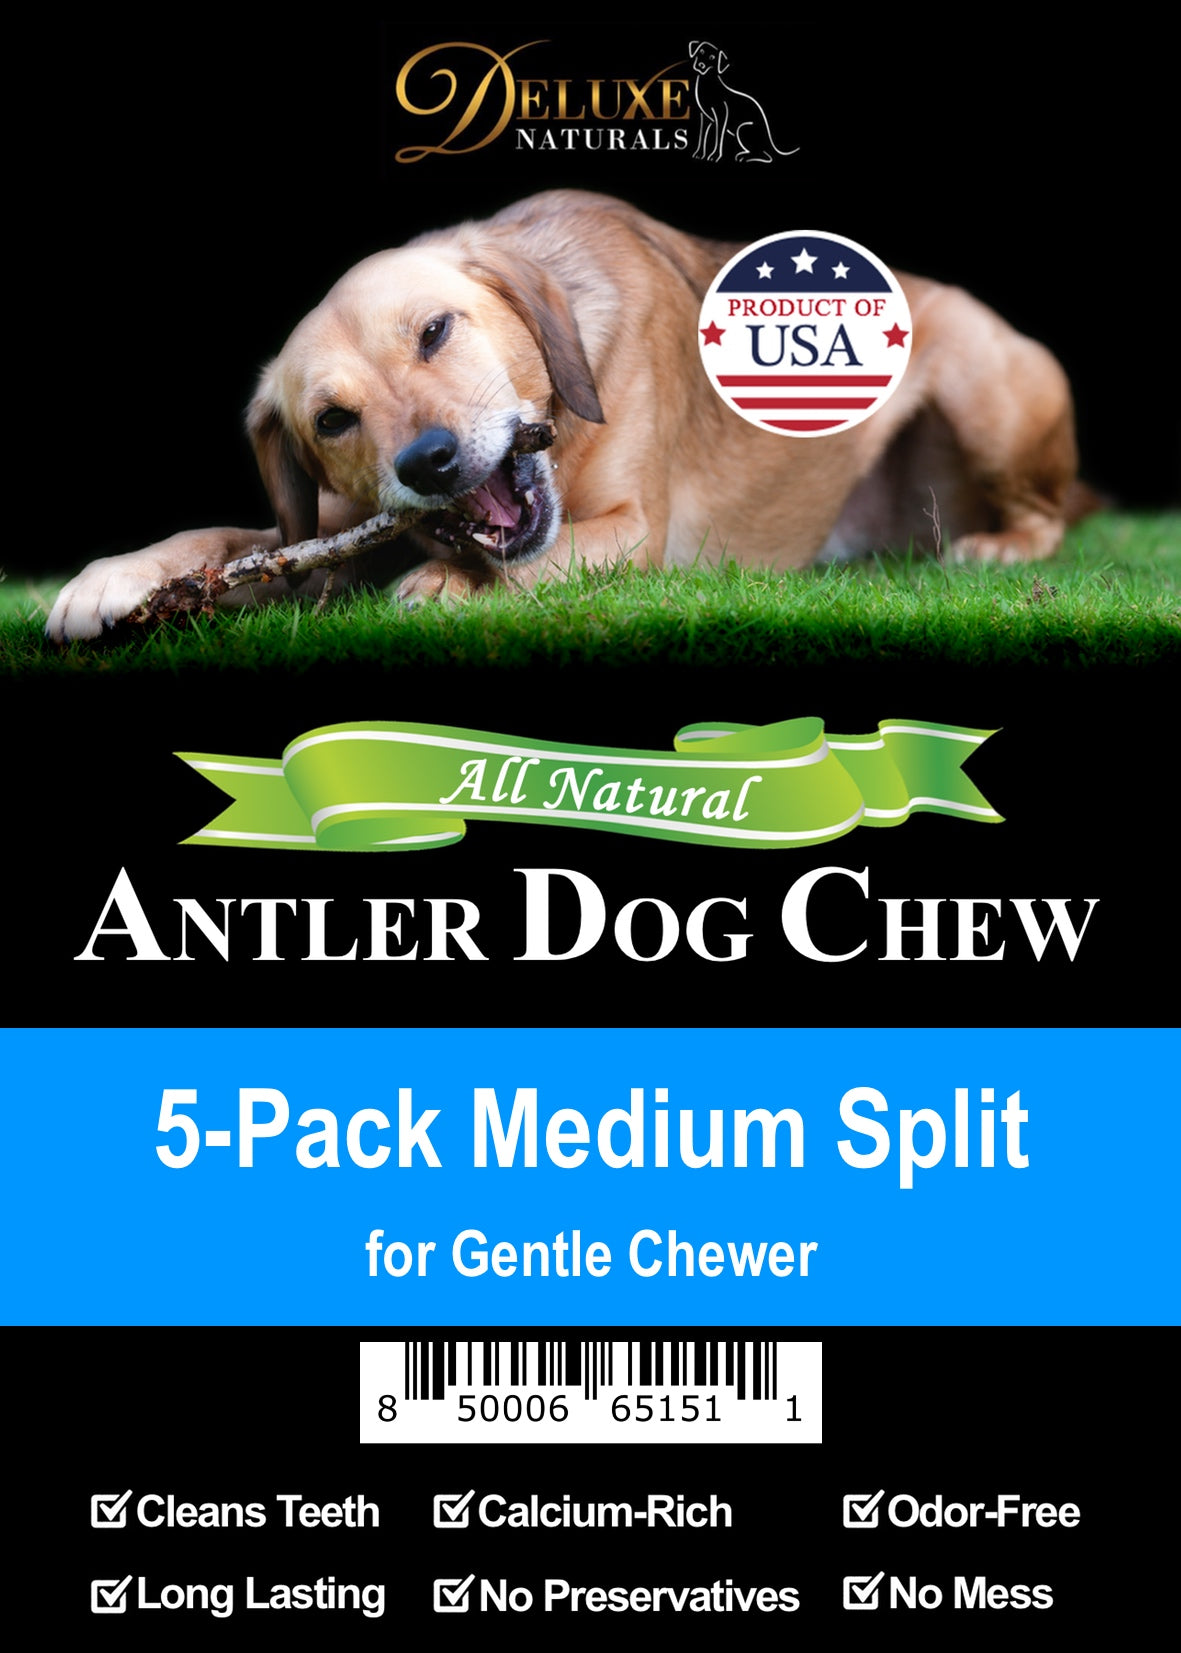 Deluxe Naturals 5-Pack Elk Antler Dog Chew - Medium Split